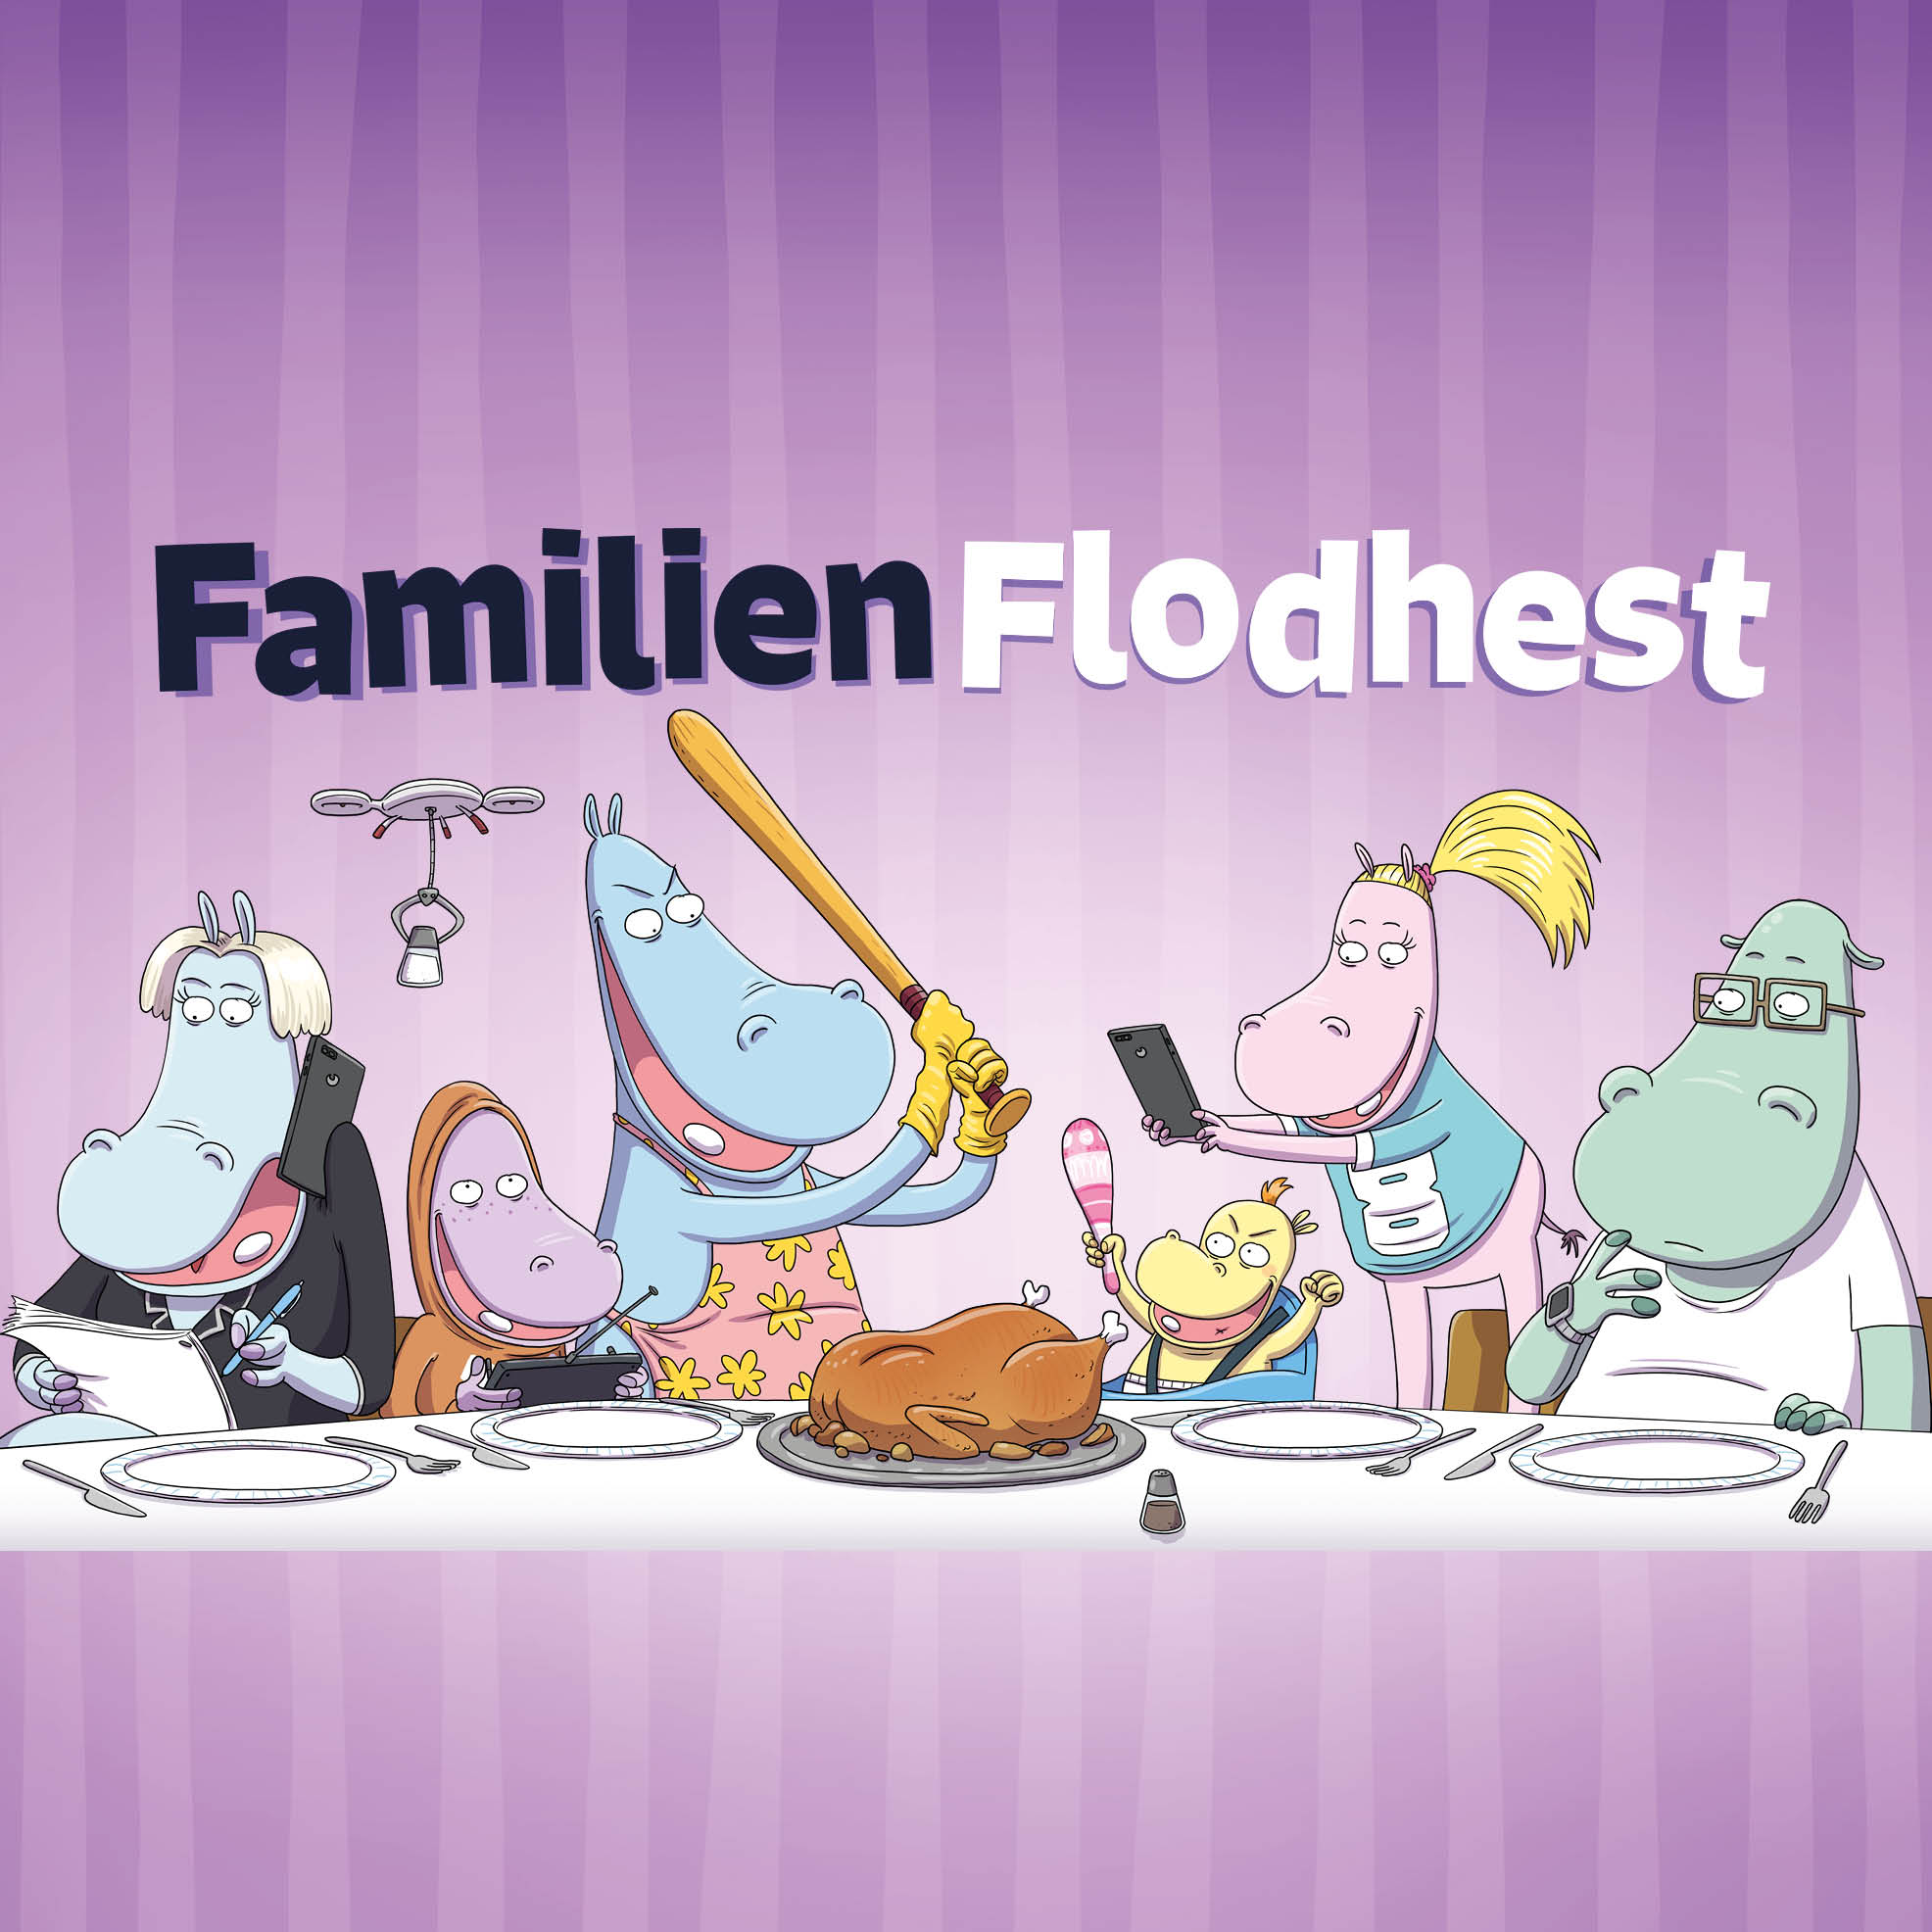 Familien Flodhest / in development